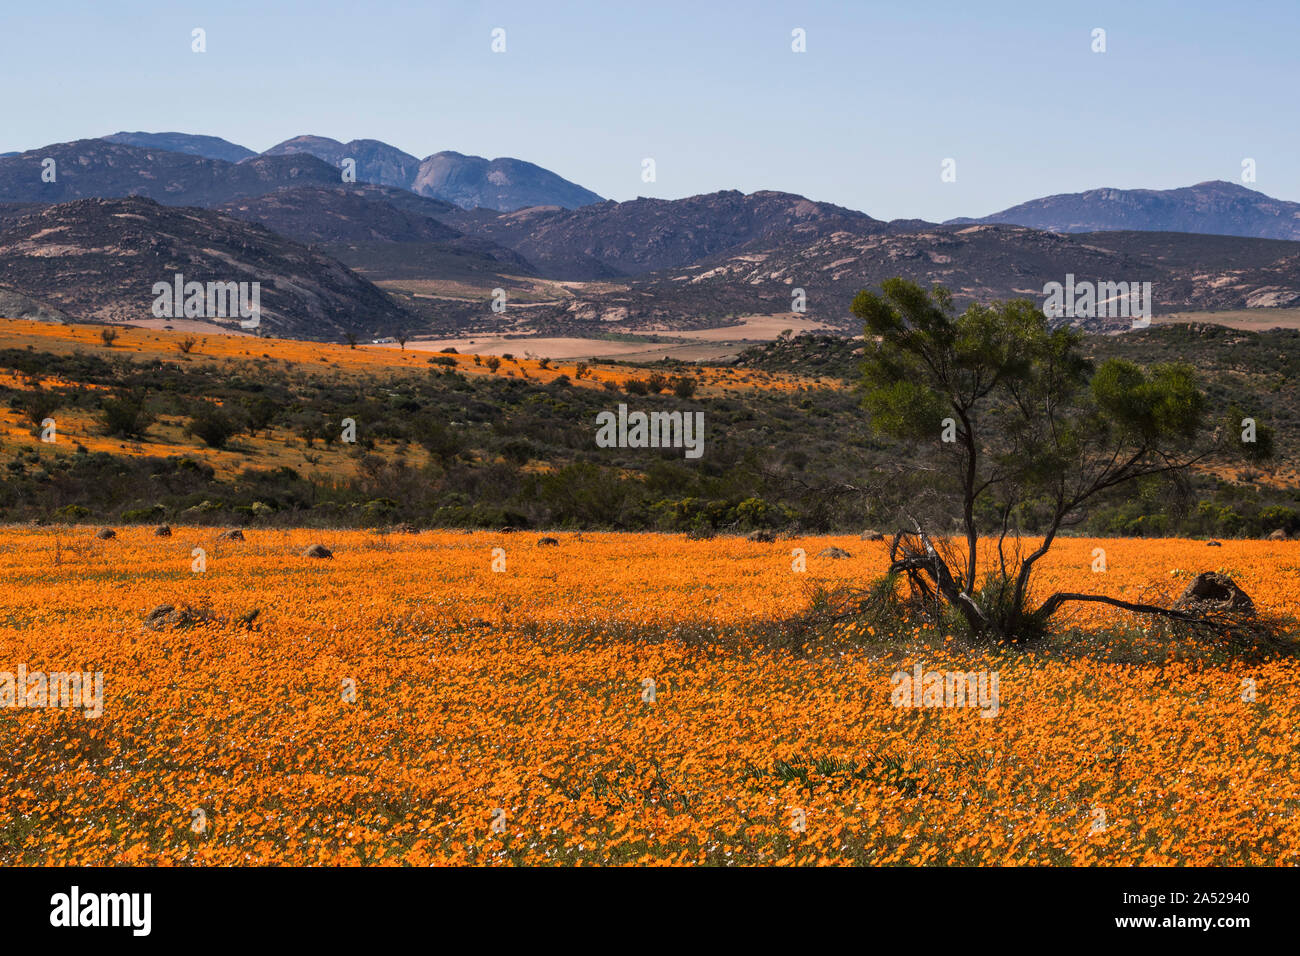 Carpet of orange glossy-eyed parachute-daisies (Ursinia cakilefolia), Skilpad section, Namaqua national park, Northern Cape, South Africa Stock Photo